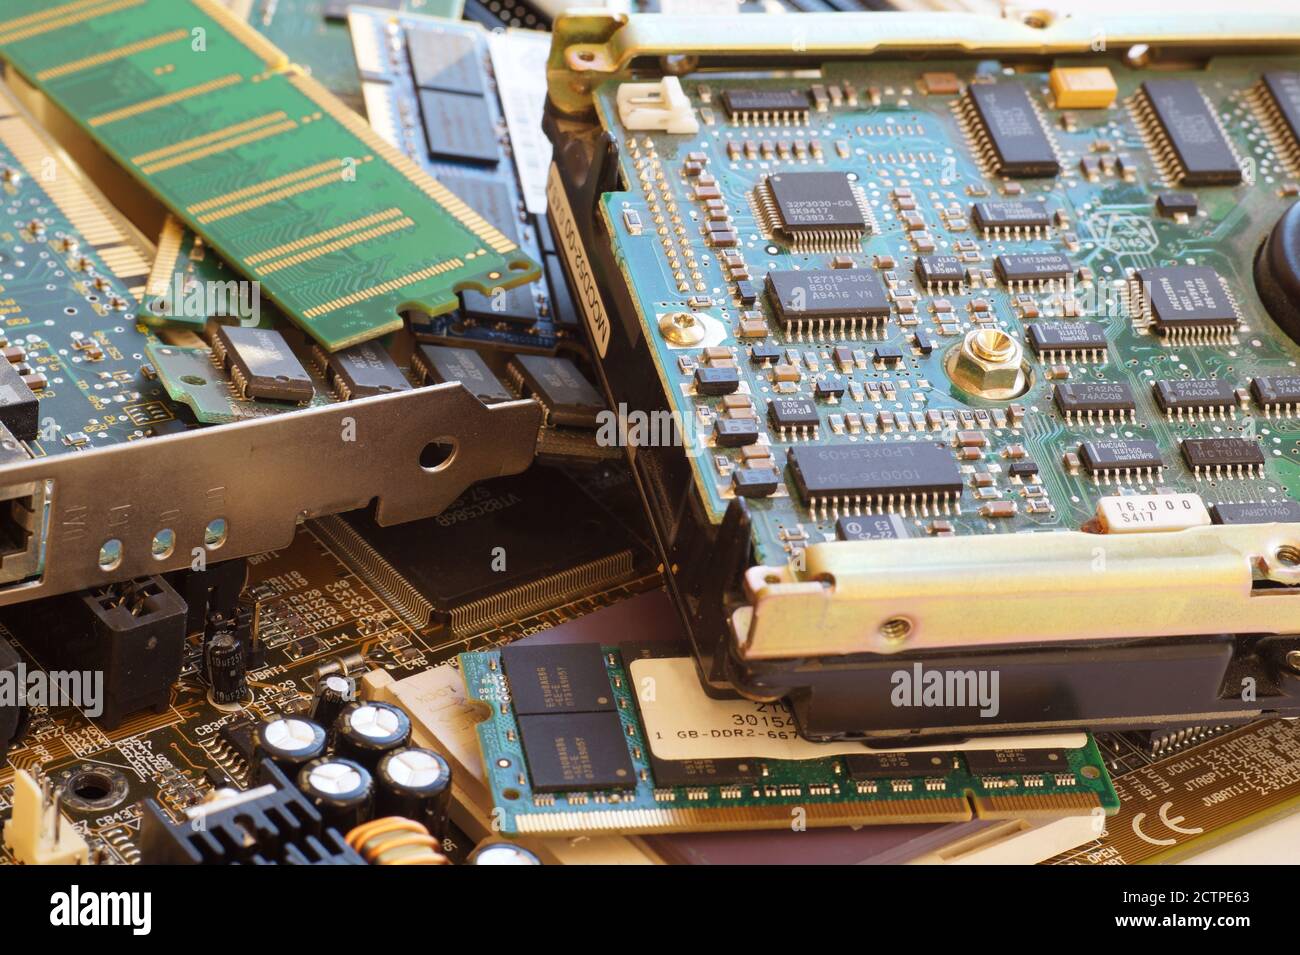 Basura electrónica. Componentes informáticos, incluidas las motherboards y la RAM, como fuente de materias primas valiosas recuperadas. Foto de stock